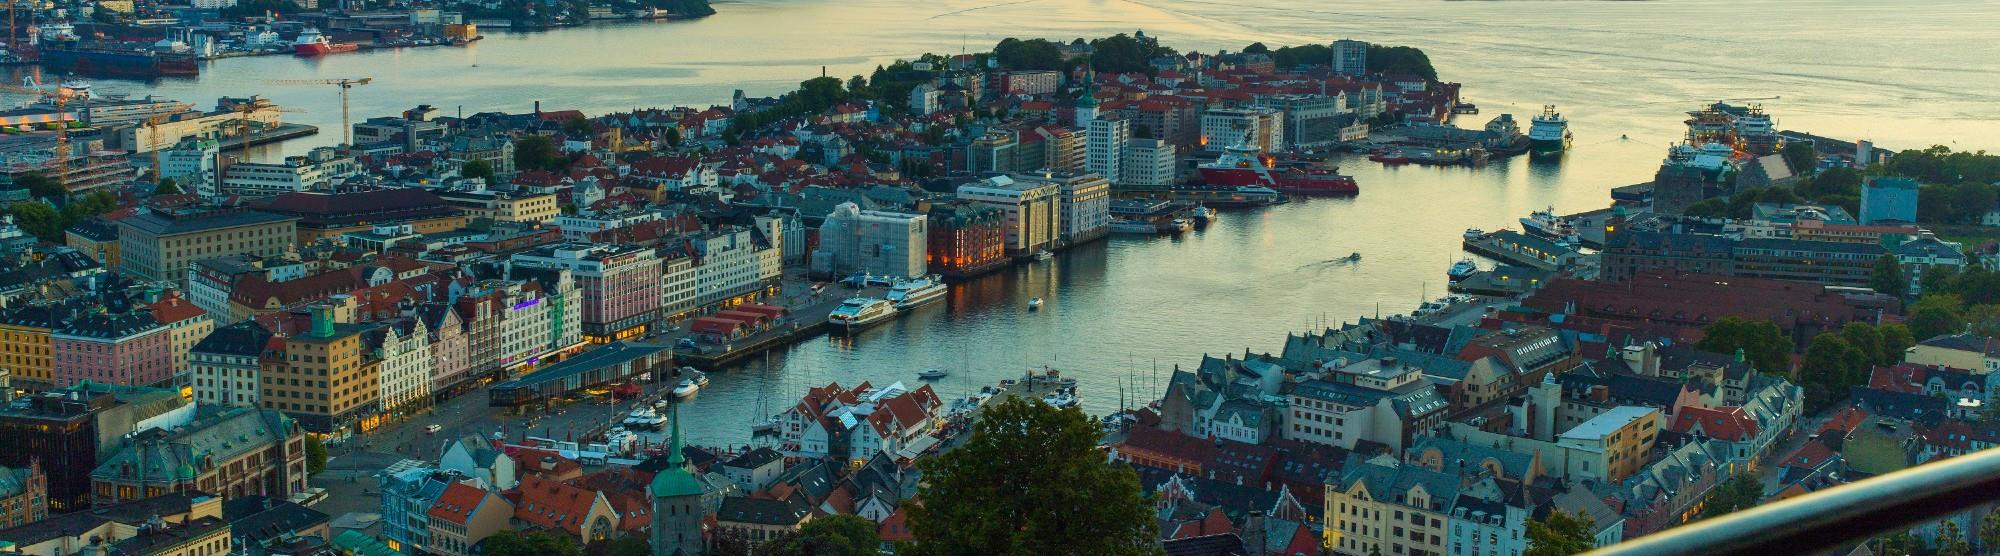 Opplevelser Bergen - utsikt fra Fløyen